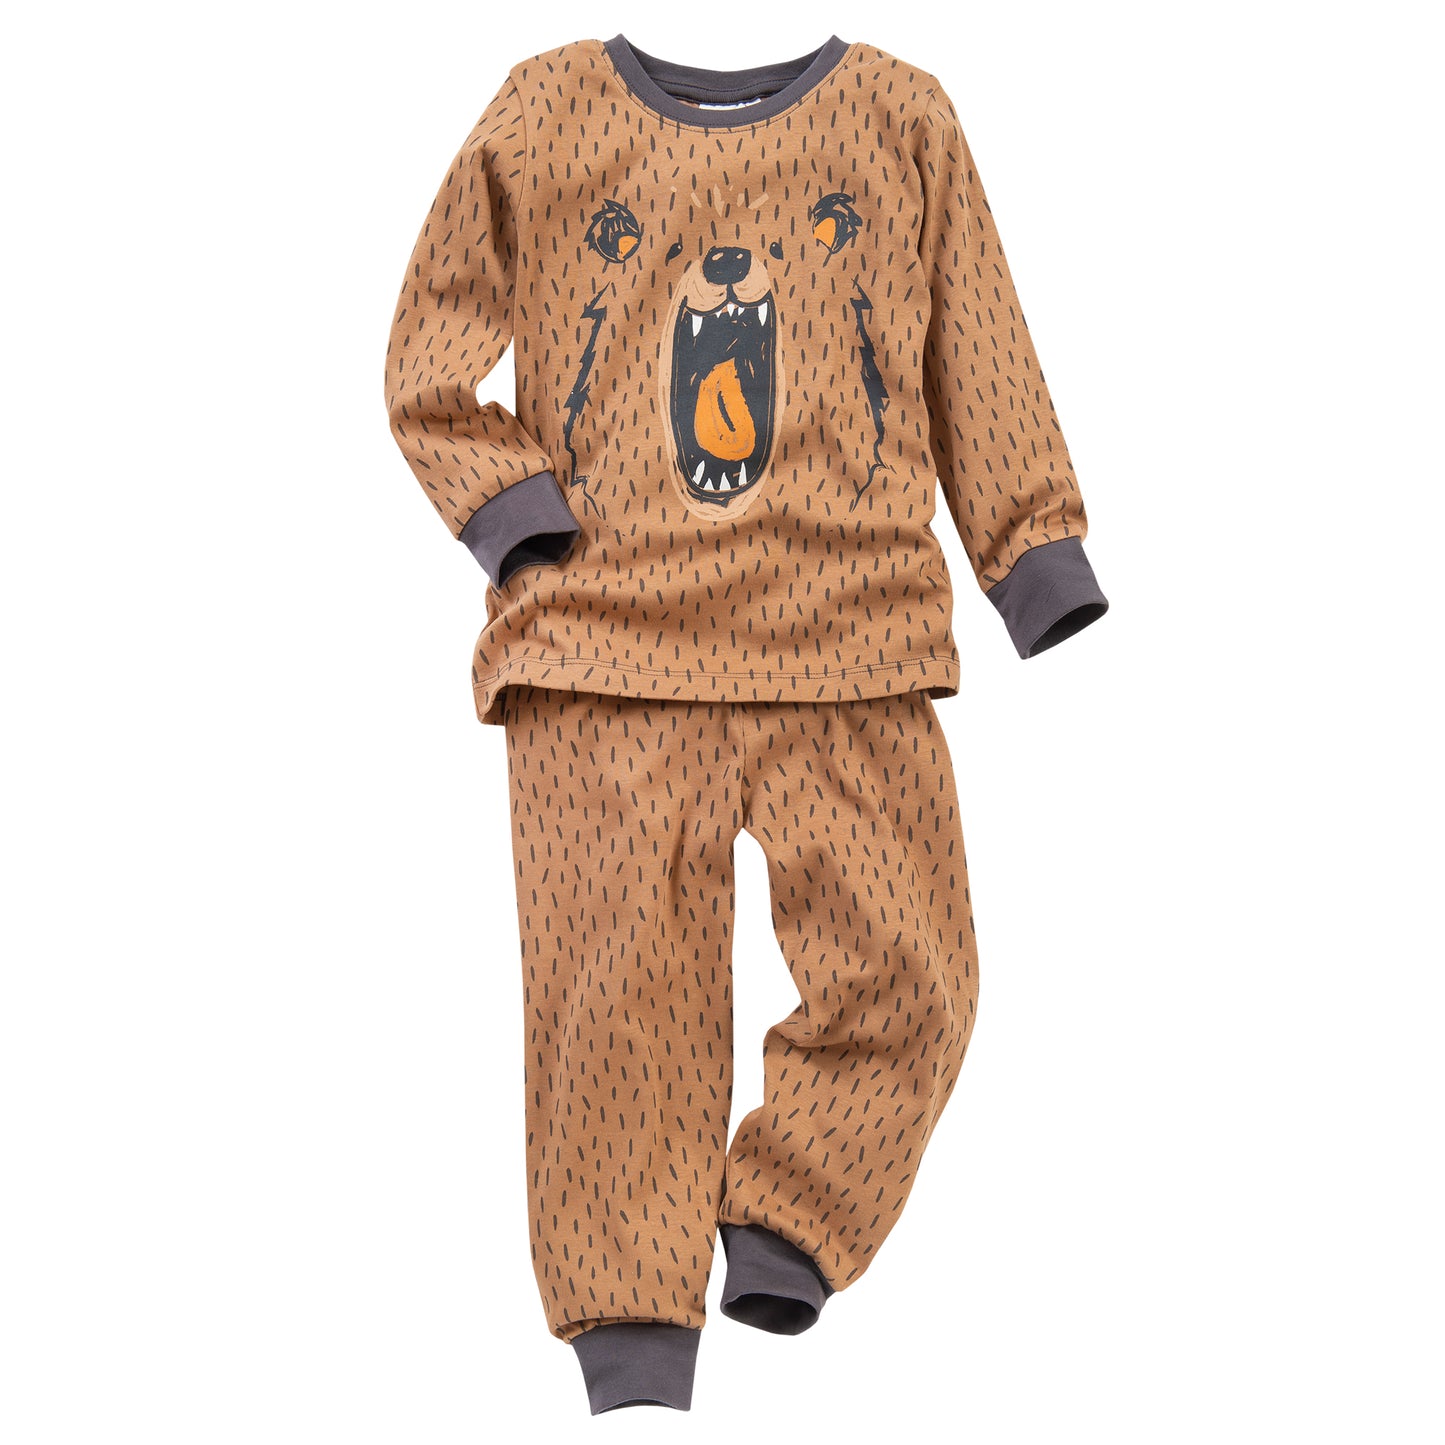 Kinder Pyjama Grizzlybären braun